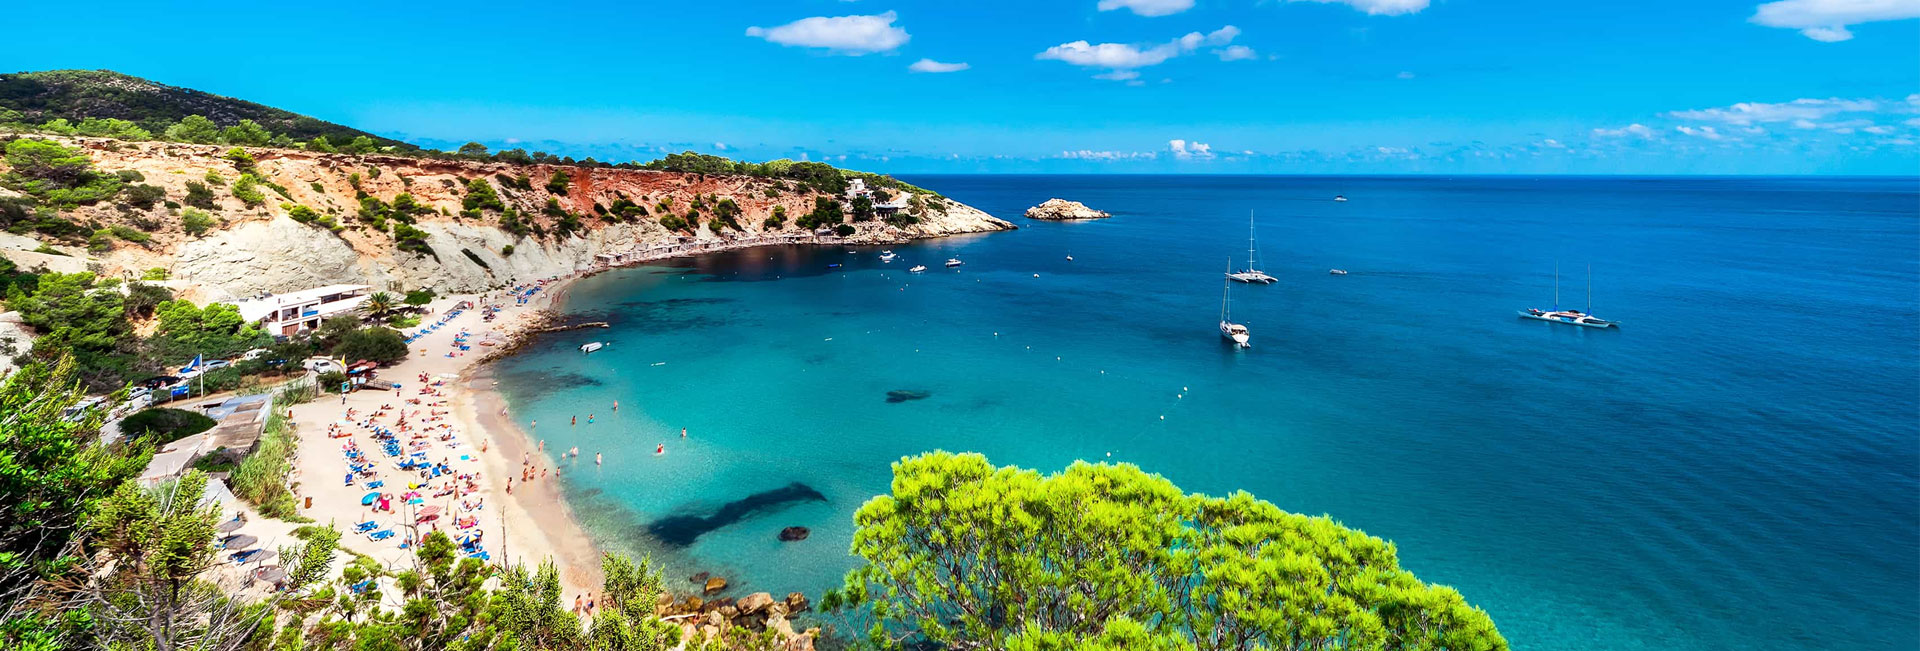 8 lugares que no puedes perderte en Ibiza